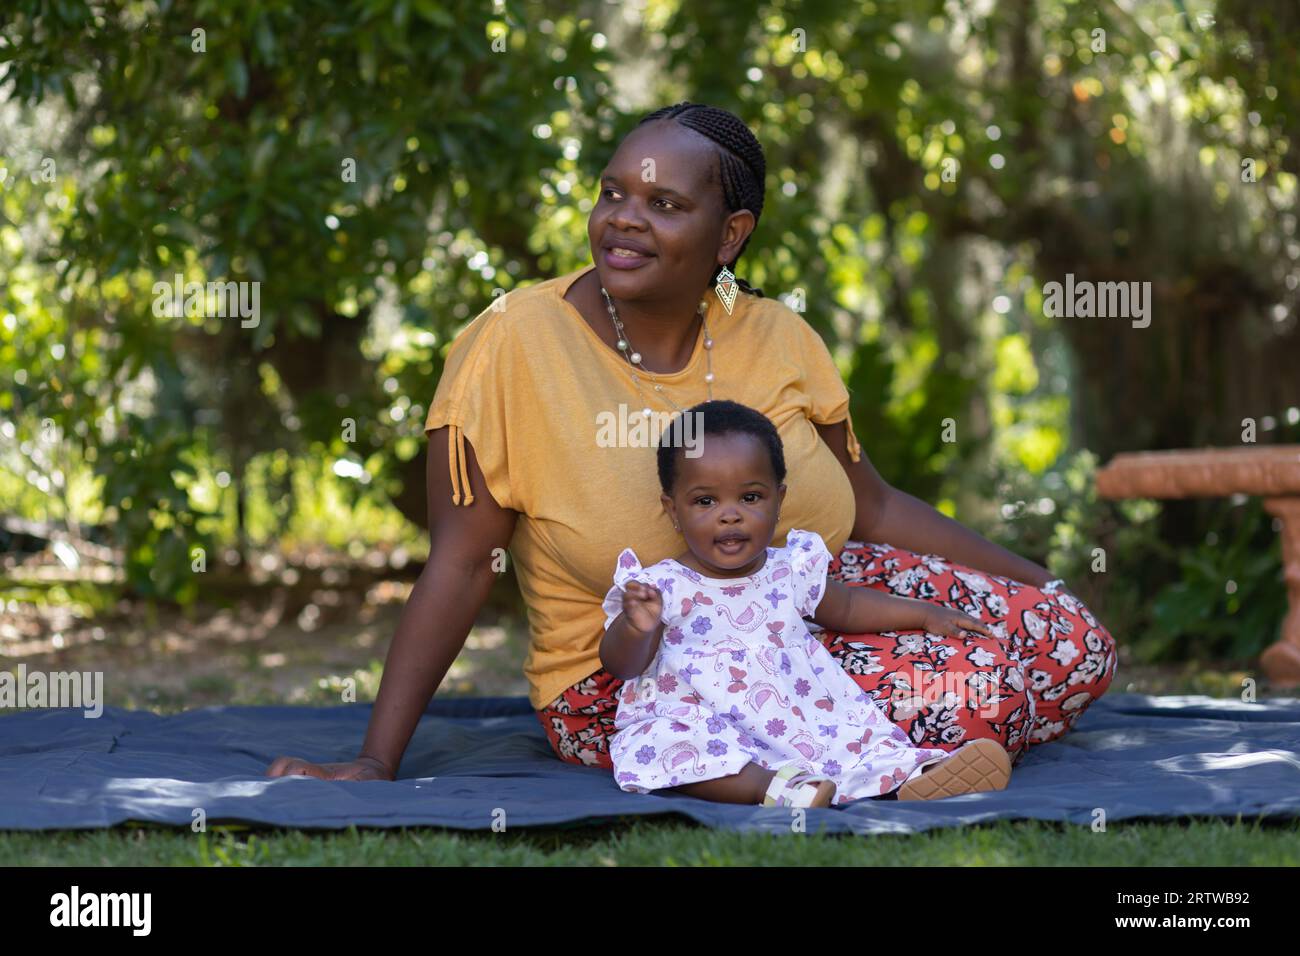 Porträt einer jungen schwarzen Frau, die auf einer Picknickdecke unter Bäumen mit ihrer kleinen Tochter sitzt Stockfoto